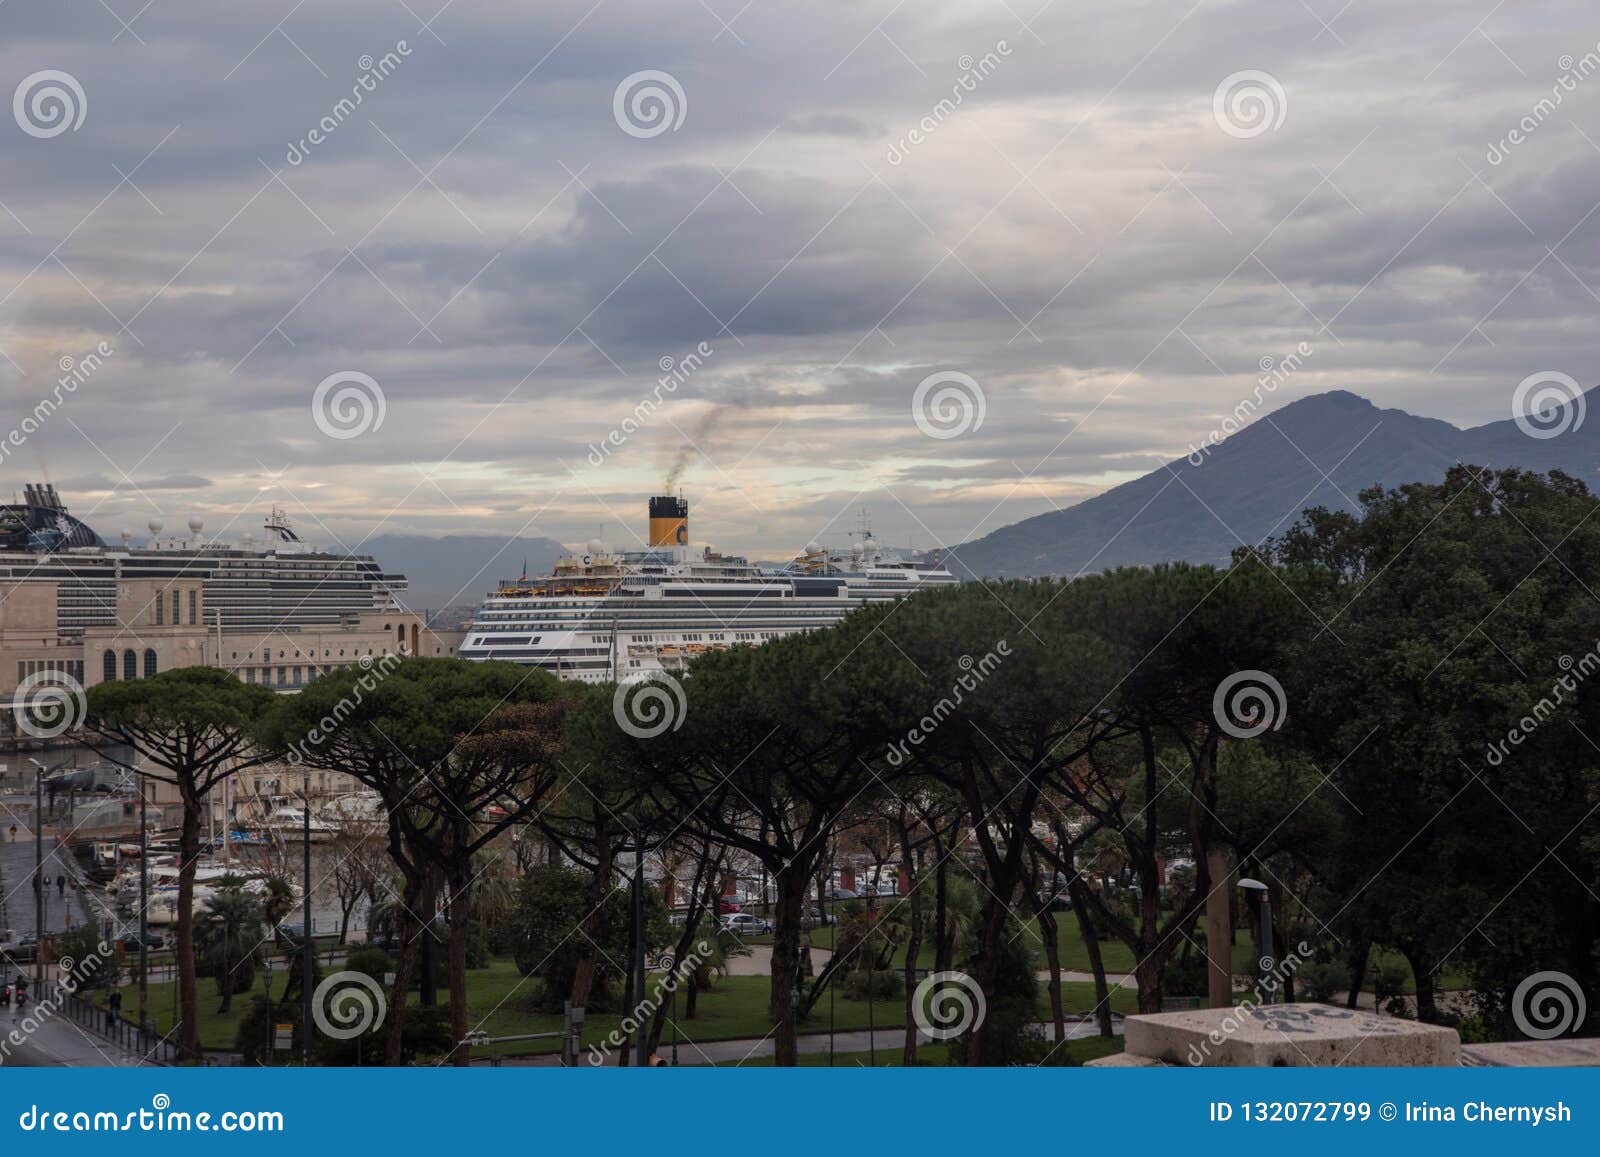 NAPELS, ITALIË - 04 November, 2018 het Costa Fascinosa-cruiseschip in de Napli-zeehaven bij de cruisesterminal De achtergrond van de Vesuvius